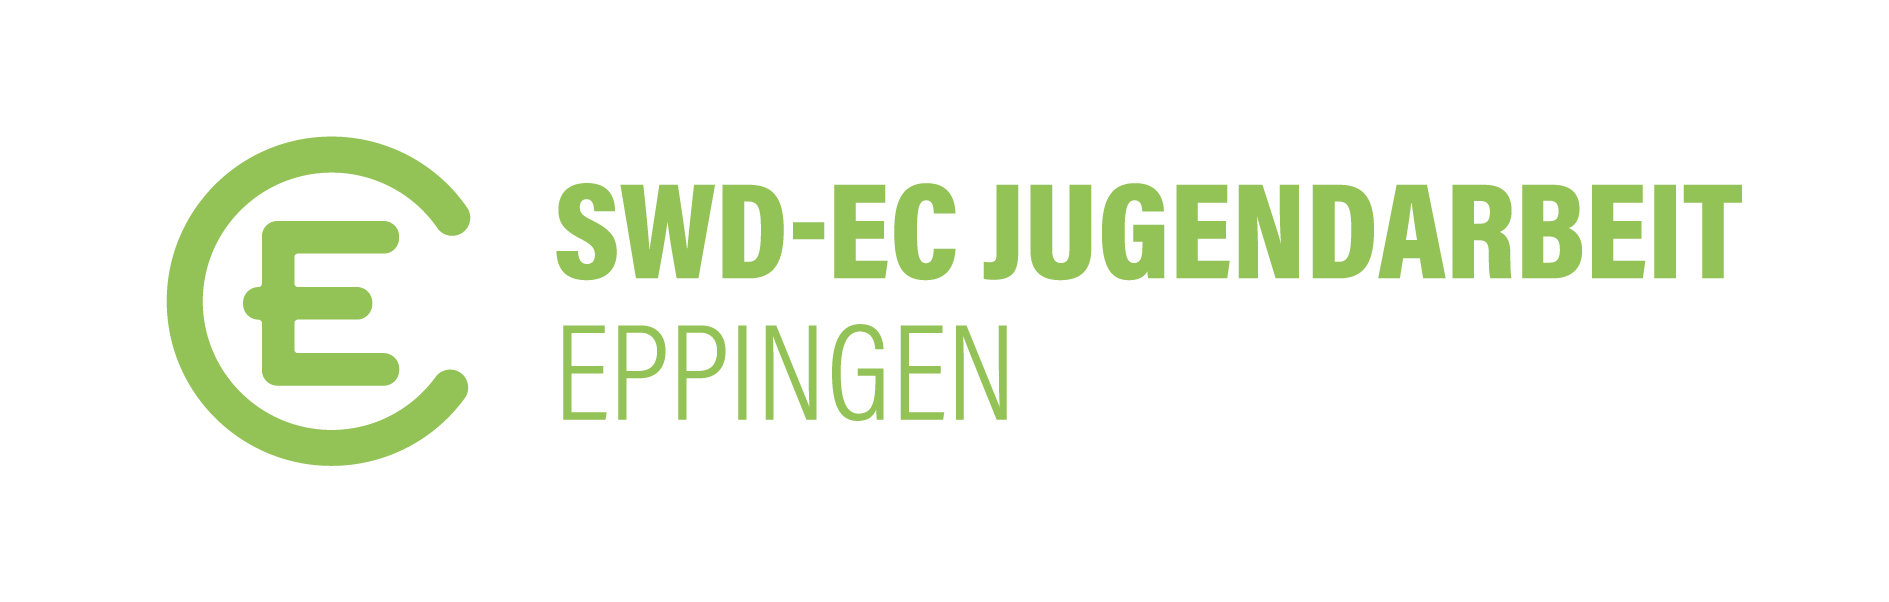 EC Eppingen